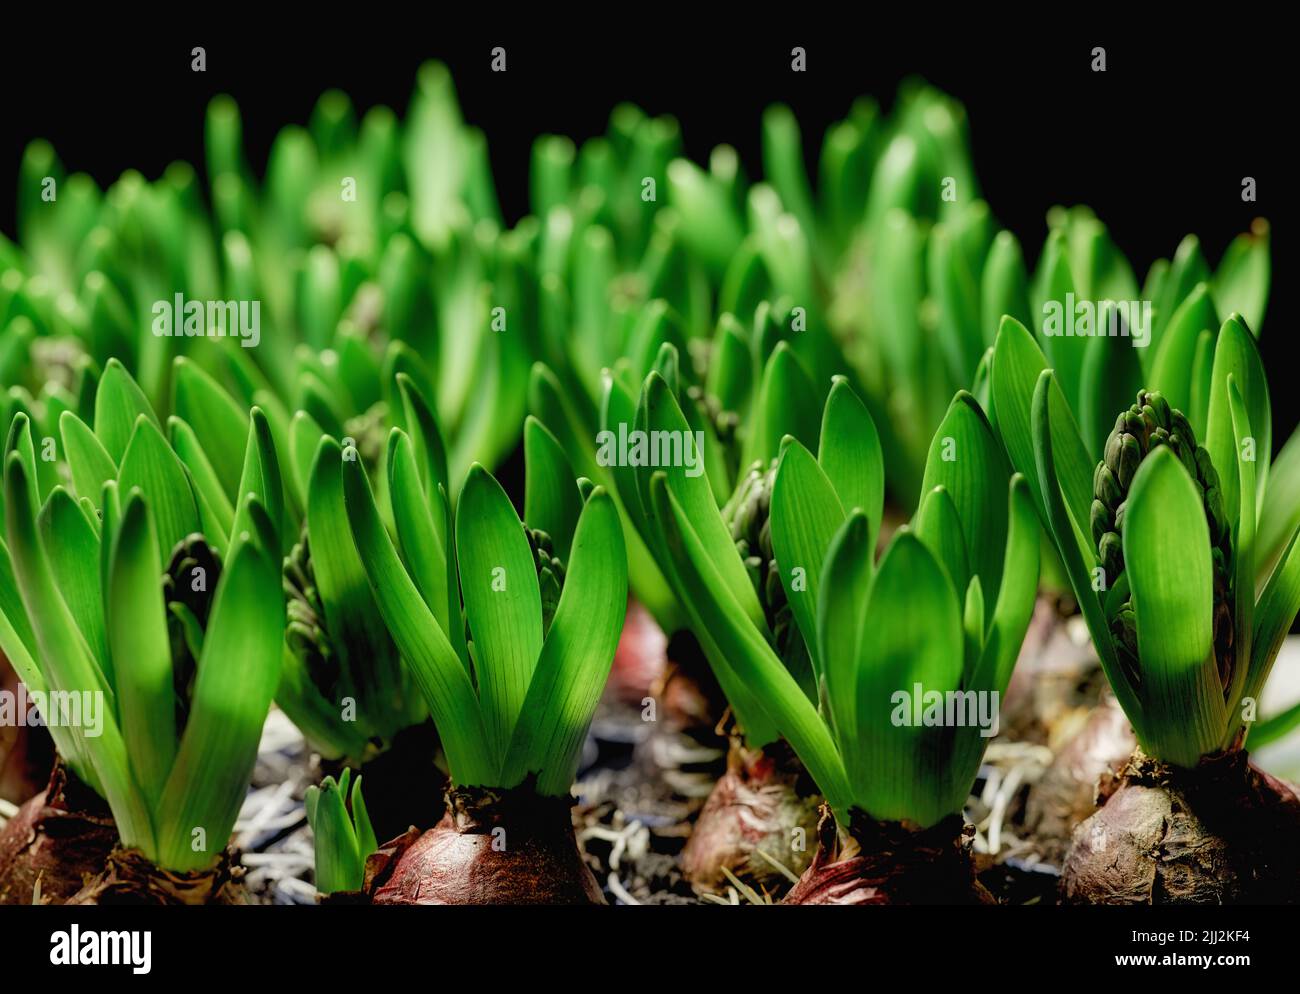 Viele grüne gewöhnliche Hyazinthe-Kräuterpflanzen isoliert auf dunklem Hintergrund. Nahaufnahme von Zierpflanzen, Kräuterblumen, die in Gärten, Parks oder Hinterhöfen wachsen Stockfoto